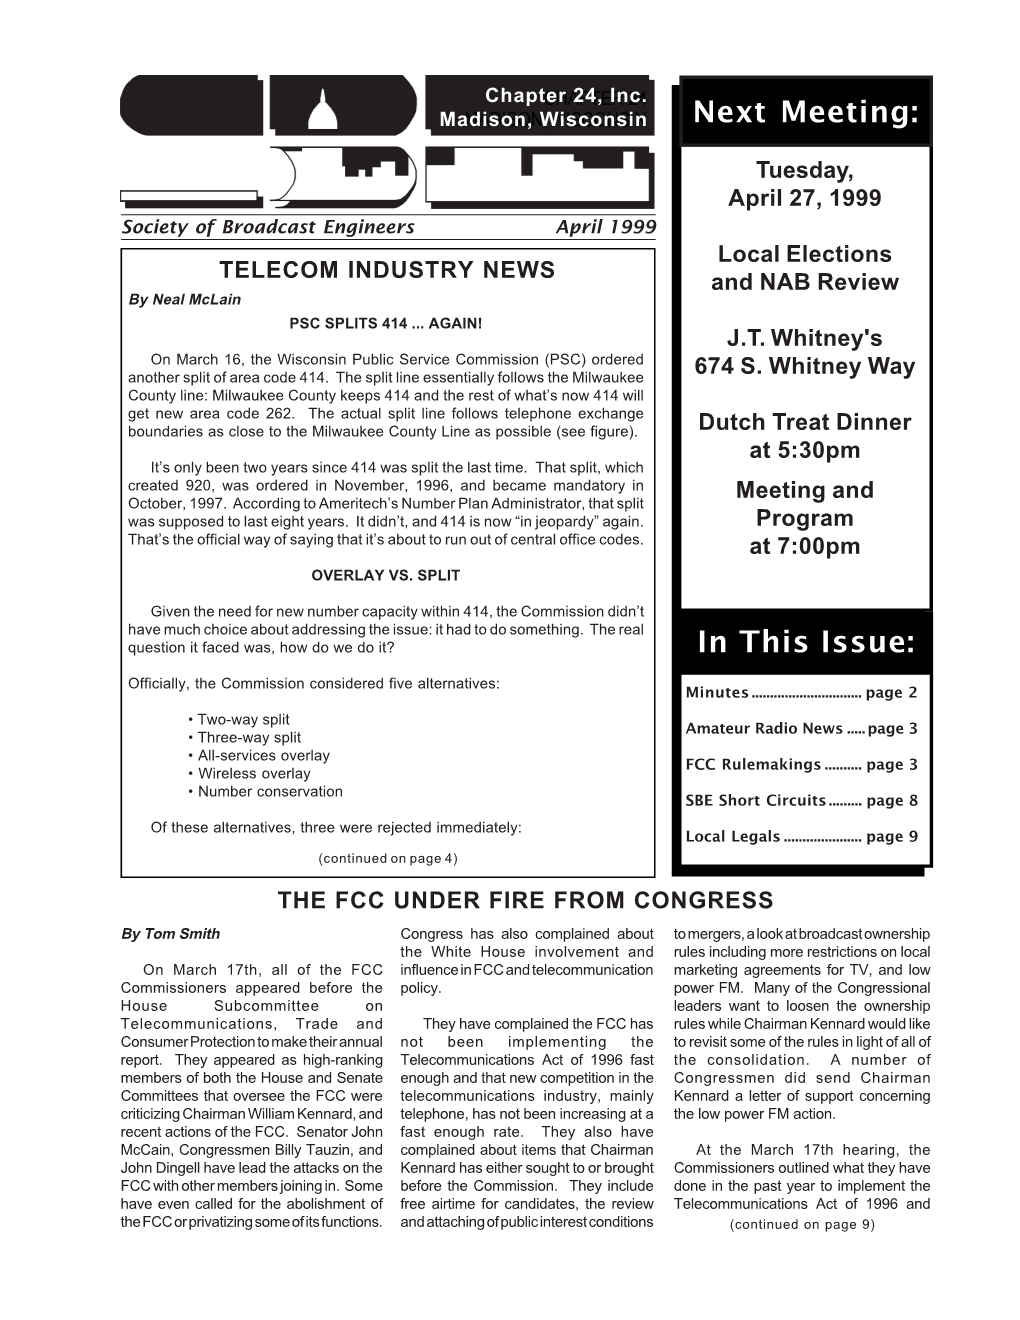 April 1999 Newsletter